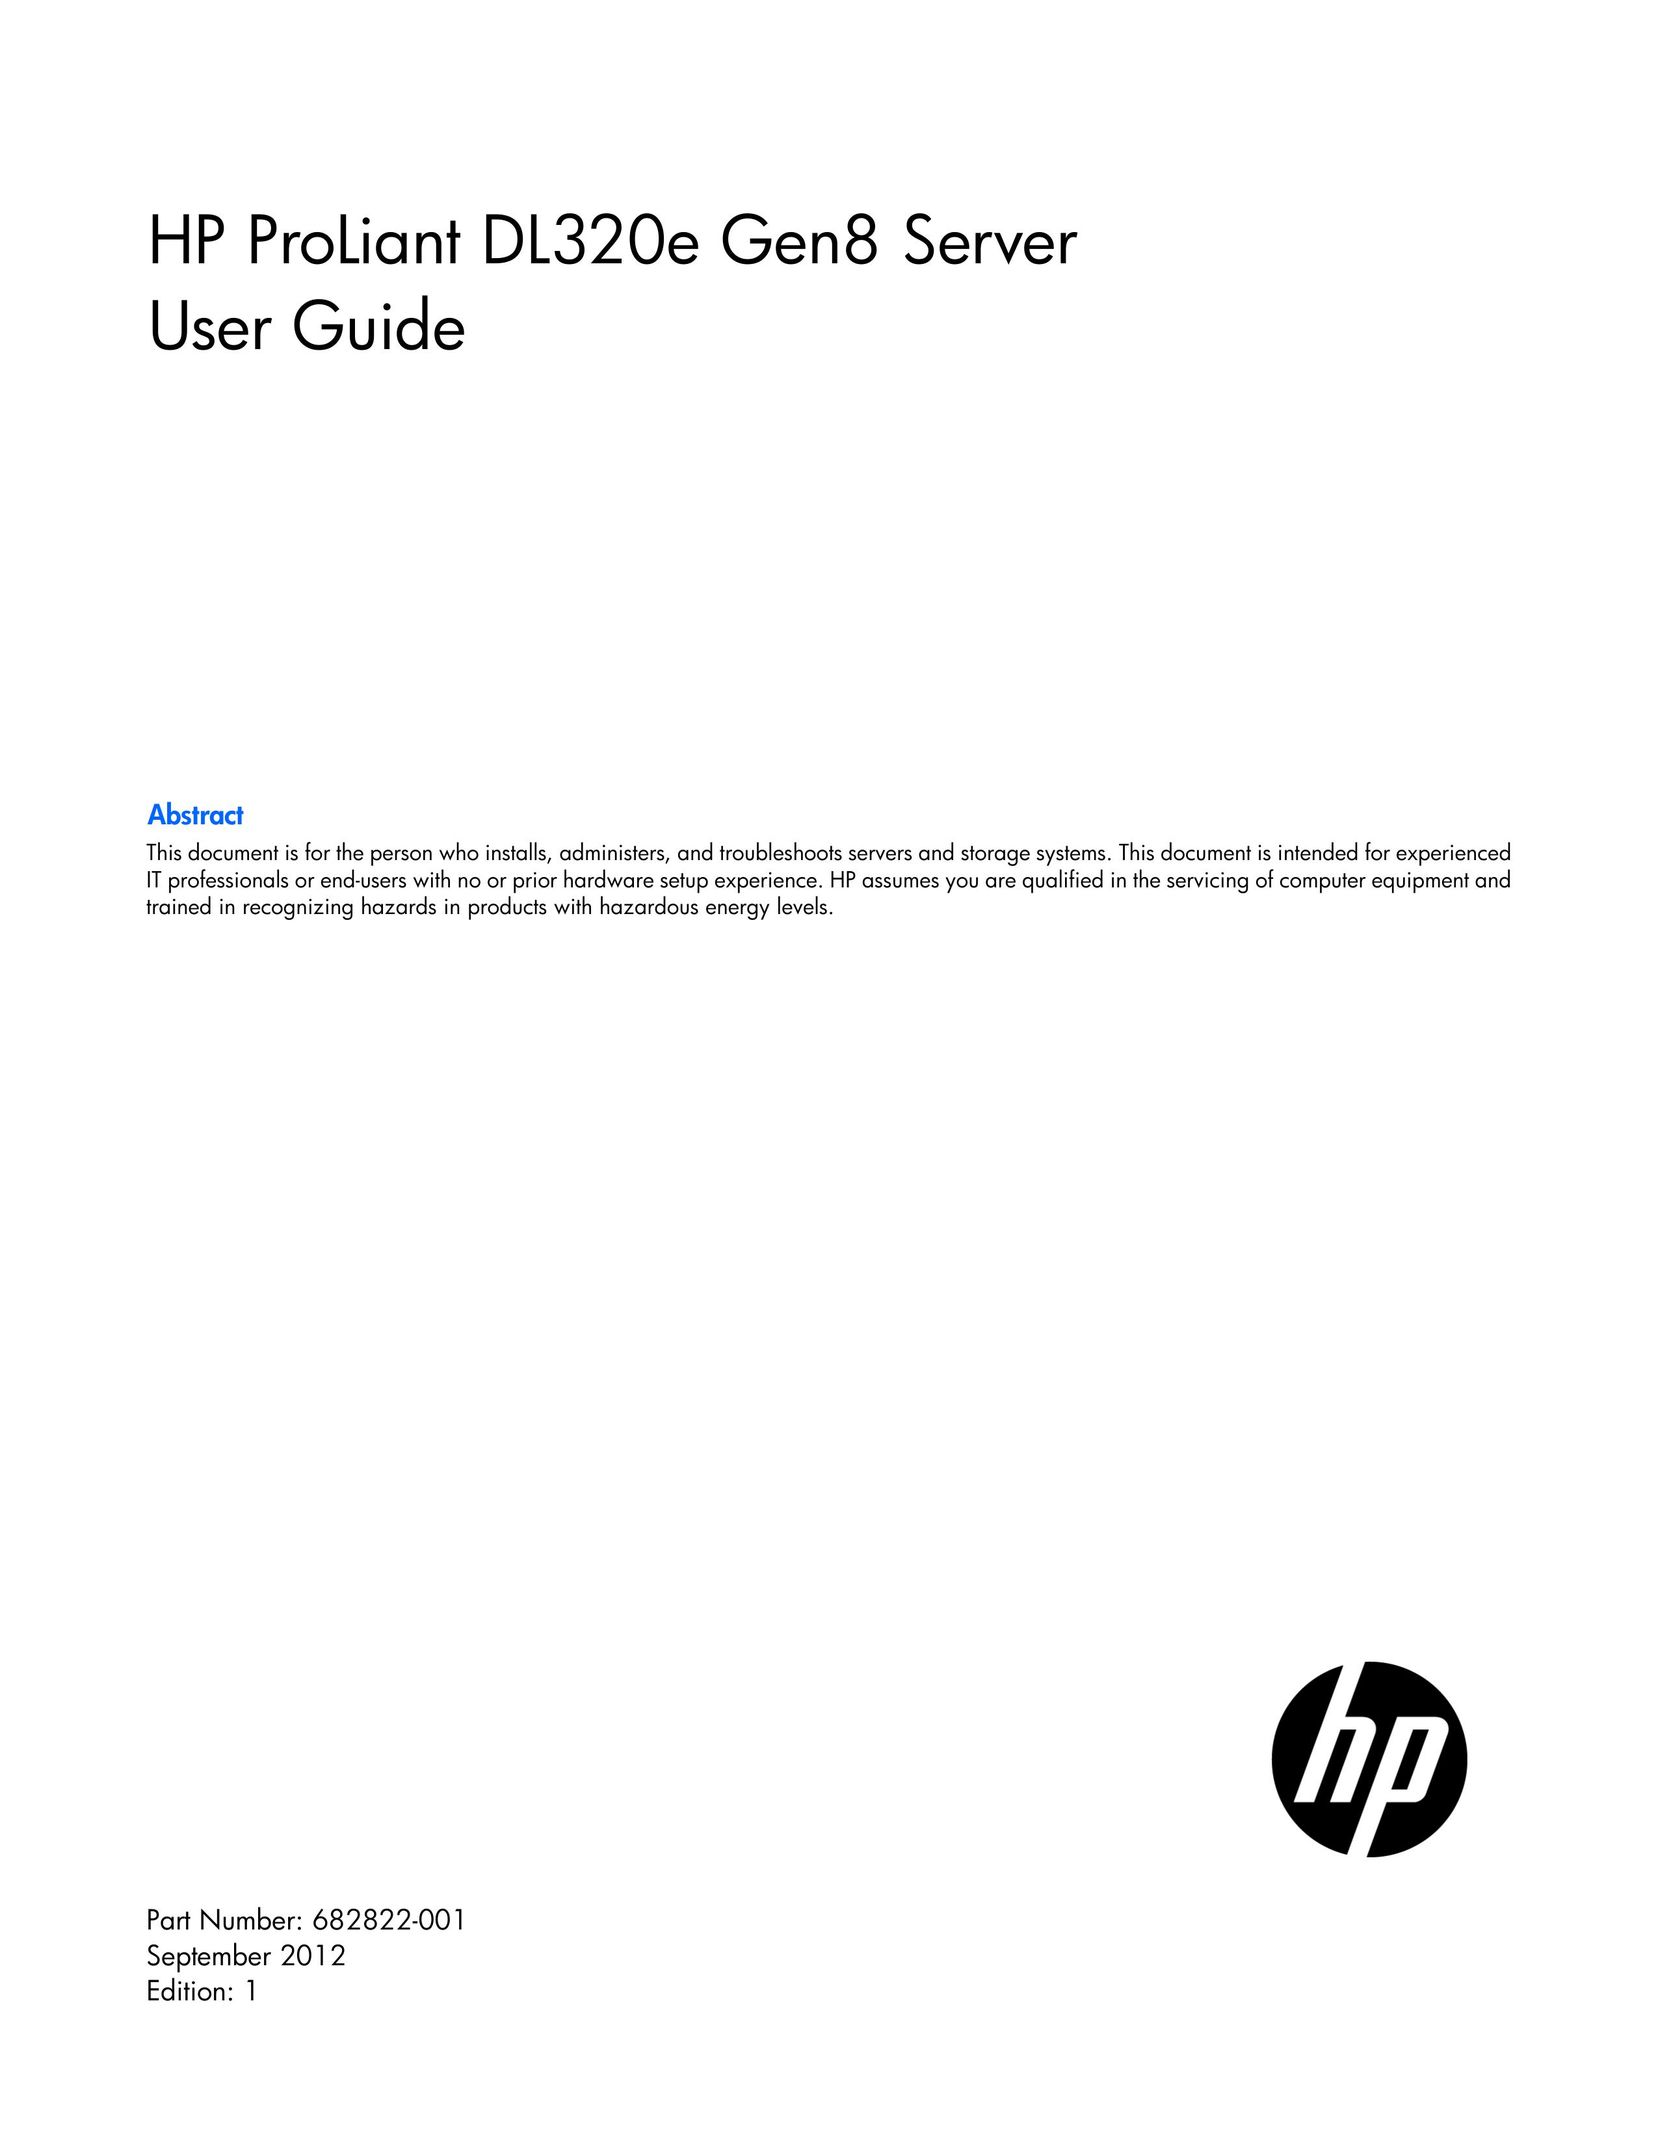 HP (Hewlett-Packard) 675422-001 Server User Manual